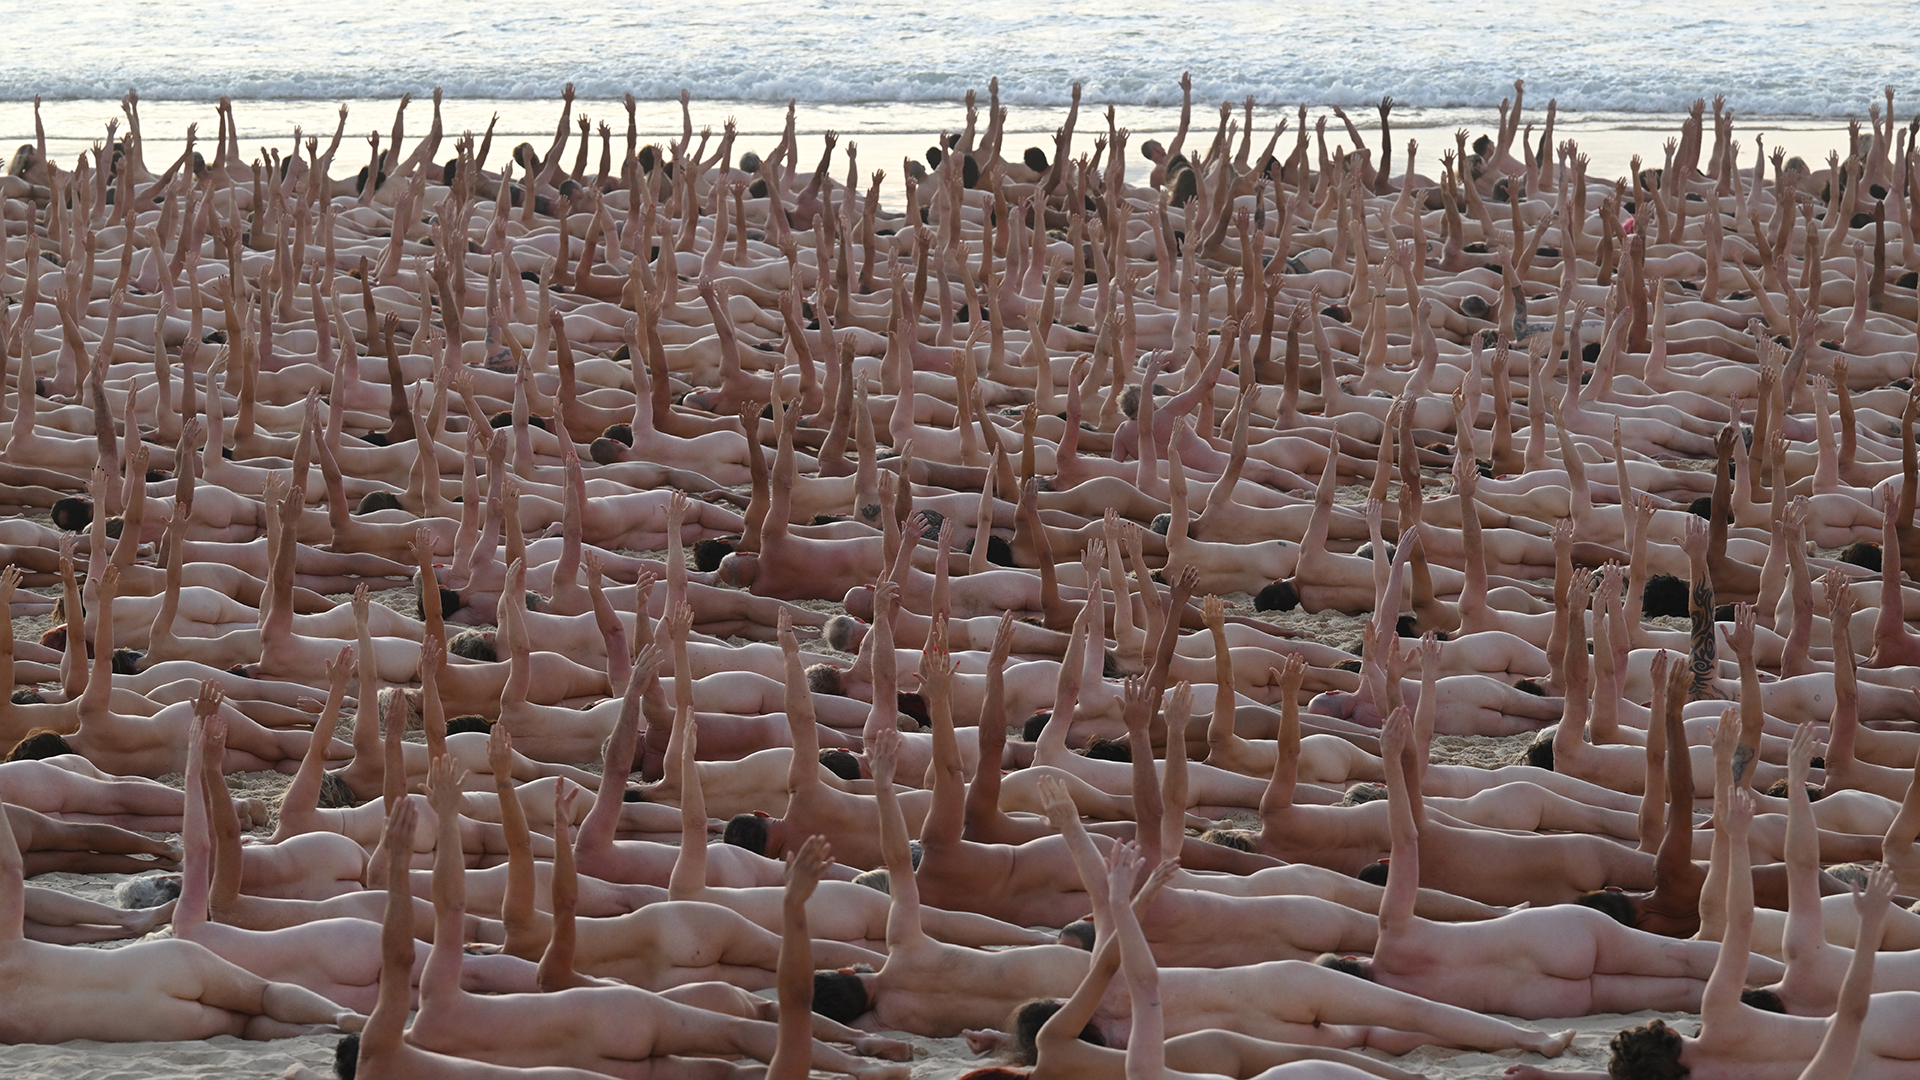 Tausende von Menschen liegen nackt am Bondi Beach in Sydney (Australien). | EPA